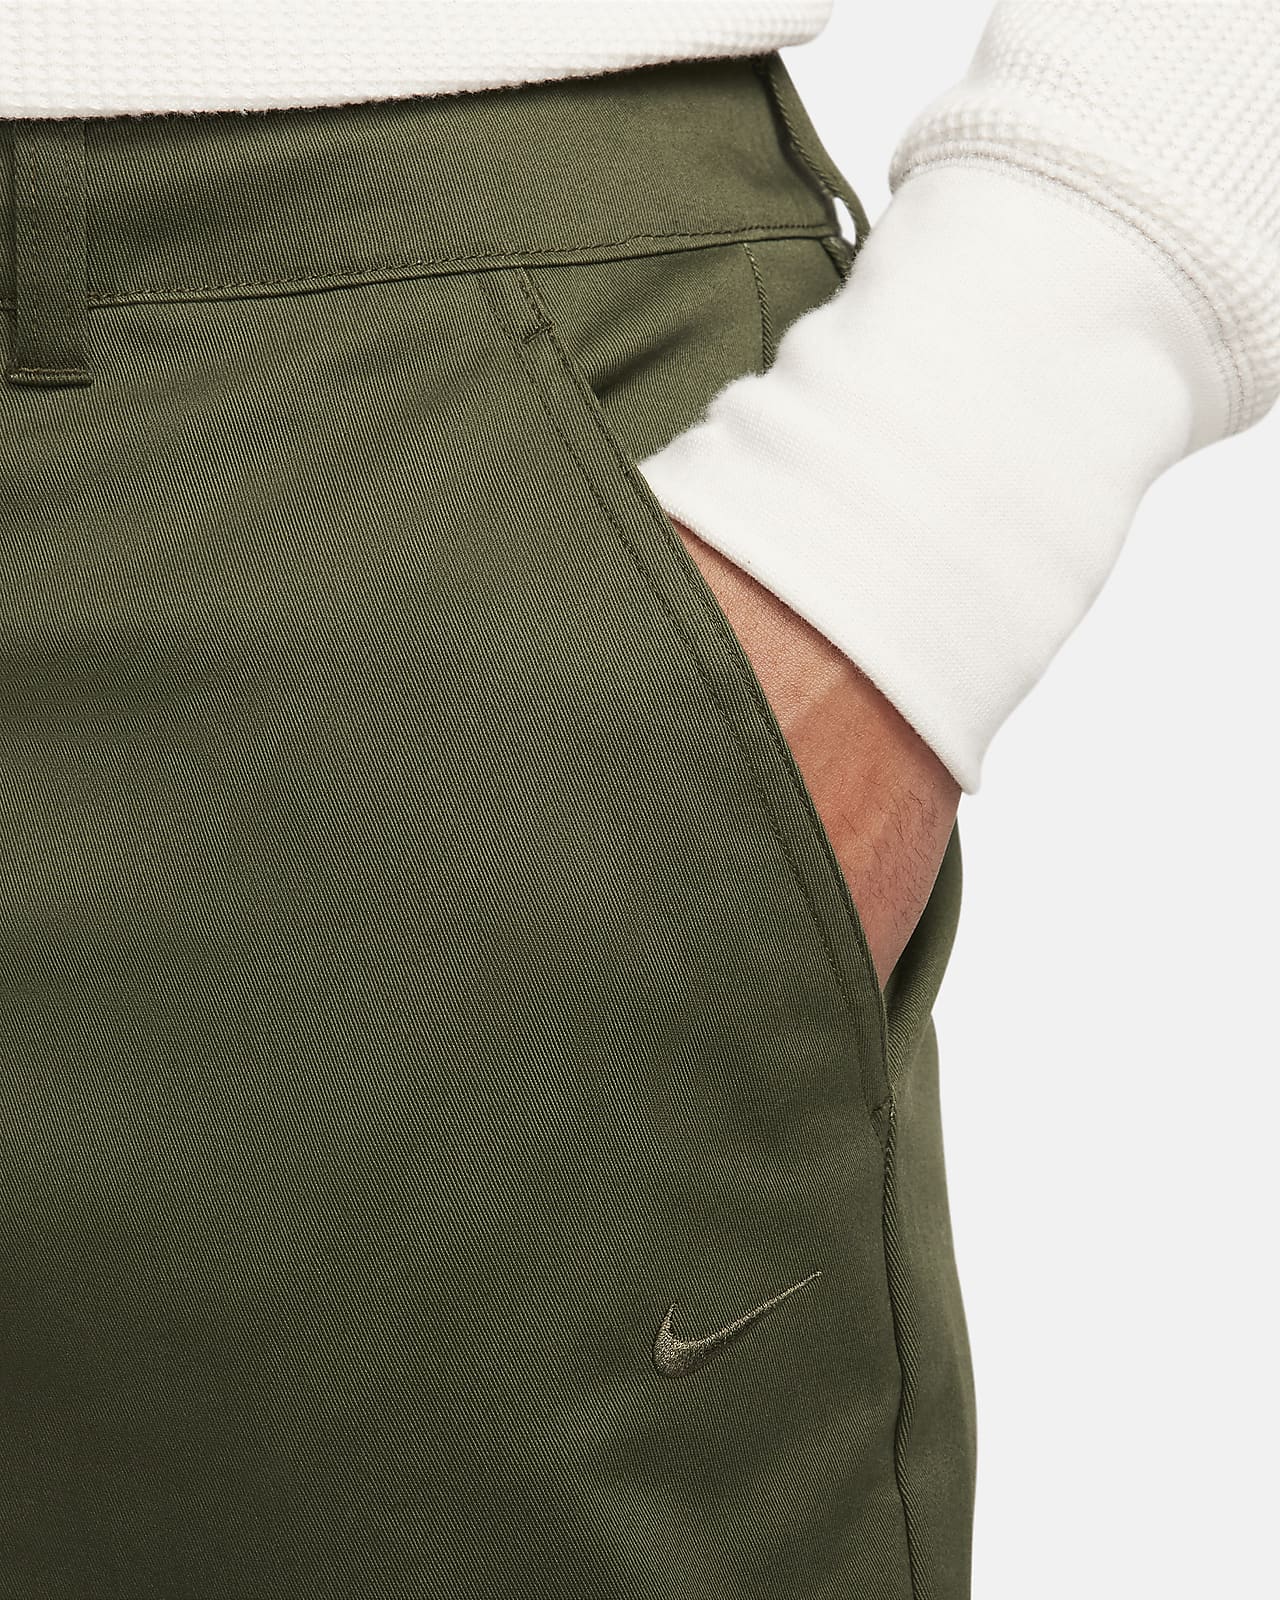 Nike Life Men's El Chino Pants